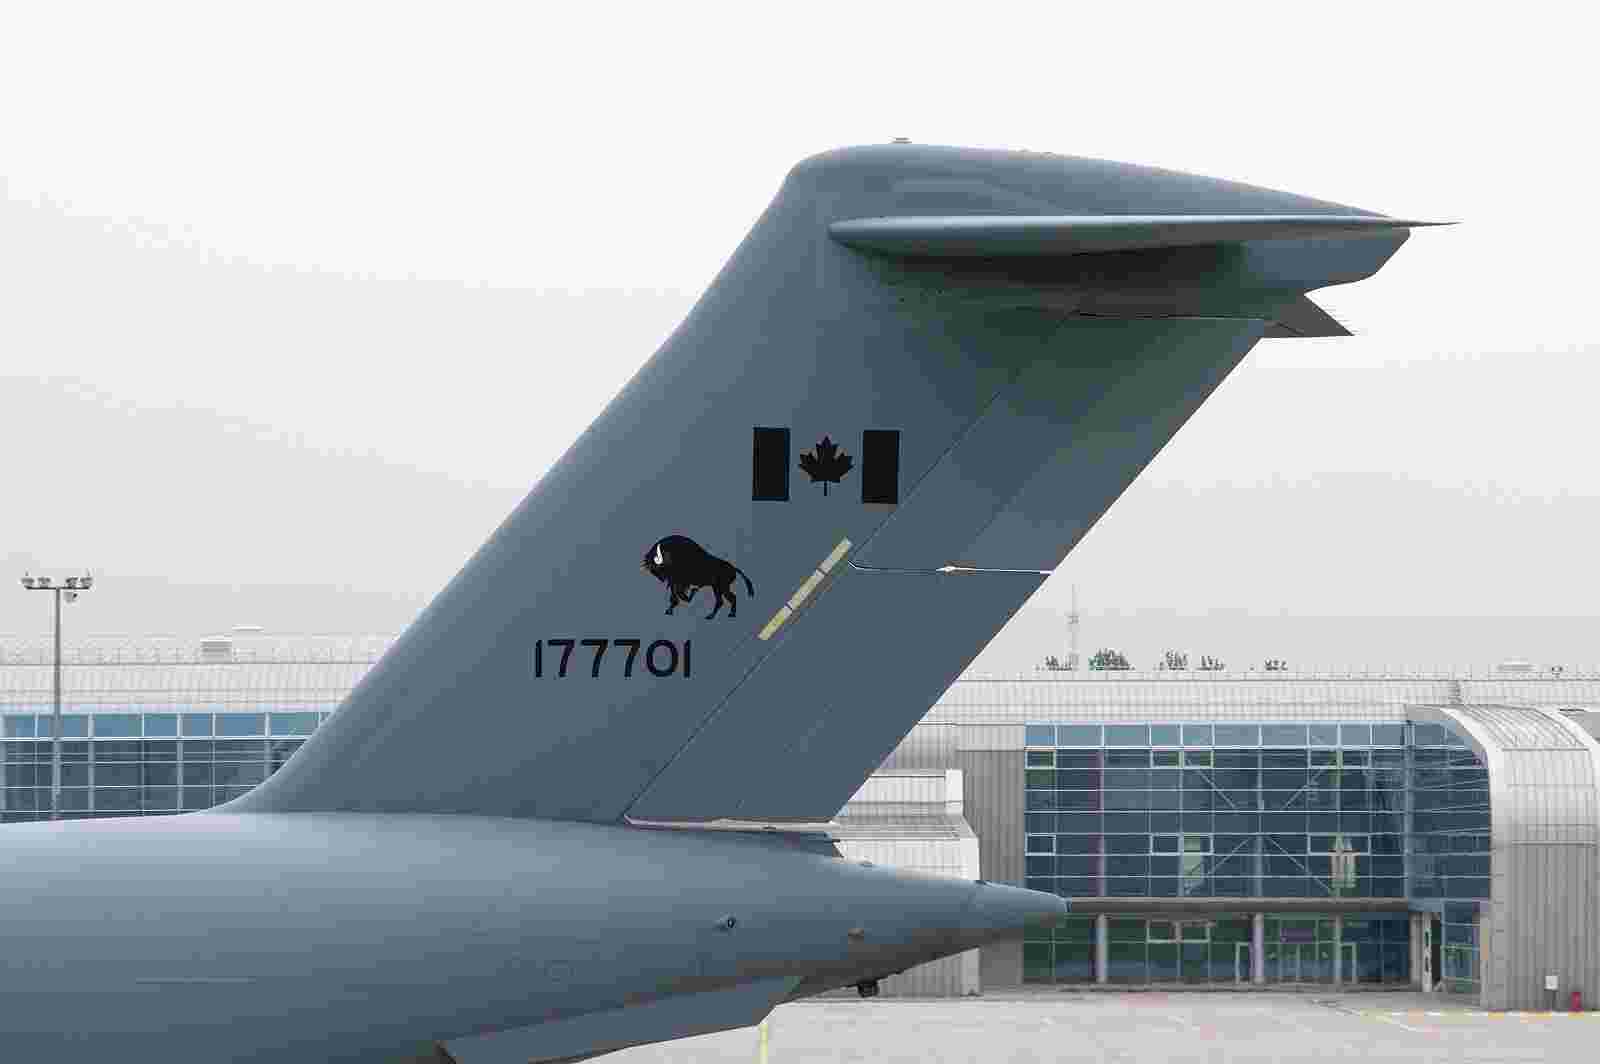 Бізон, провінція Манітоба та літак CC-177. Що їх об’єднує ?